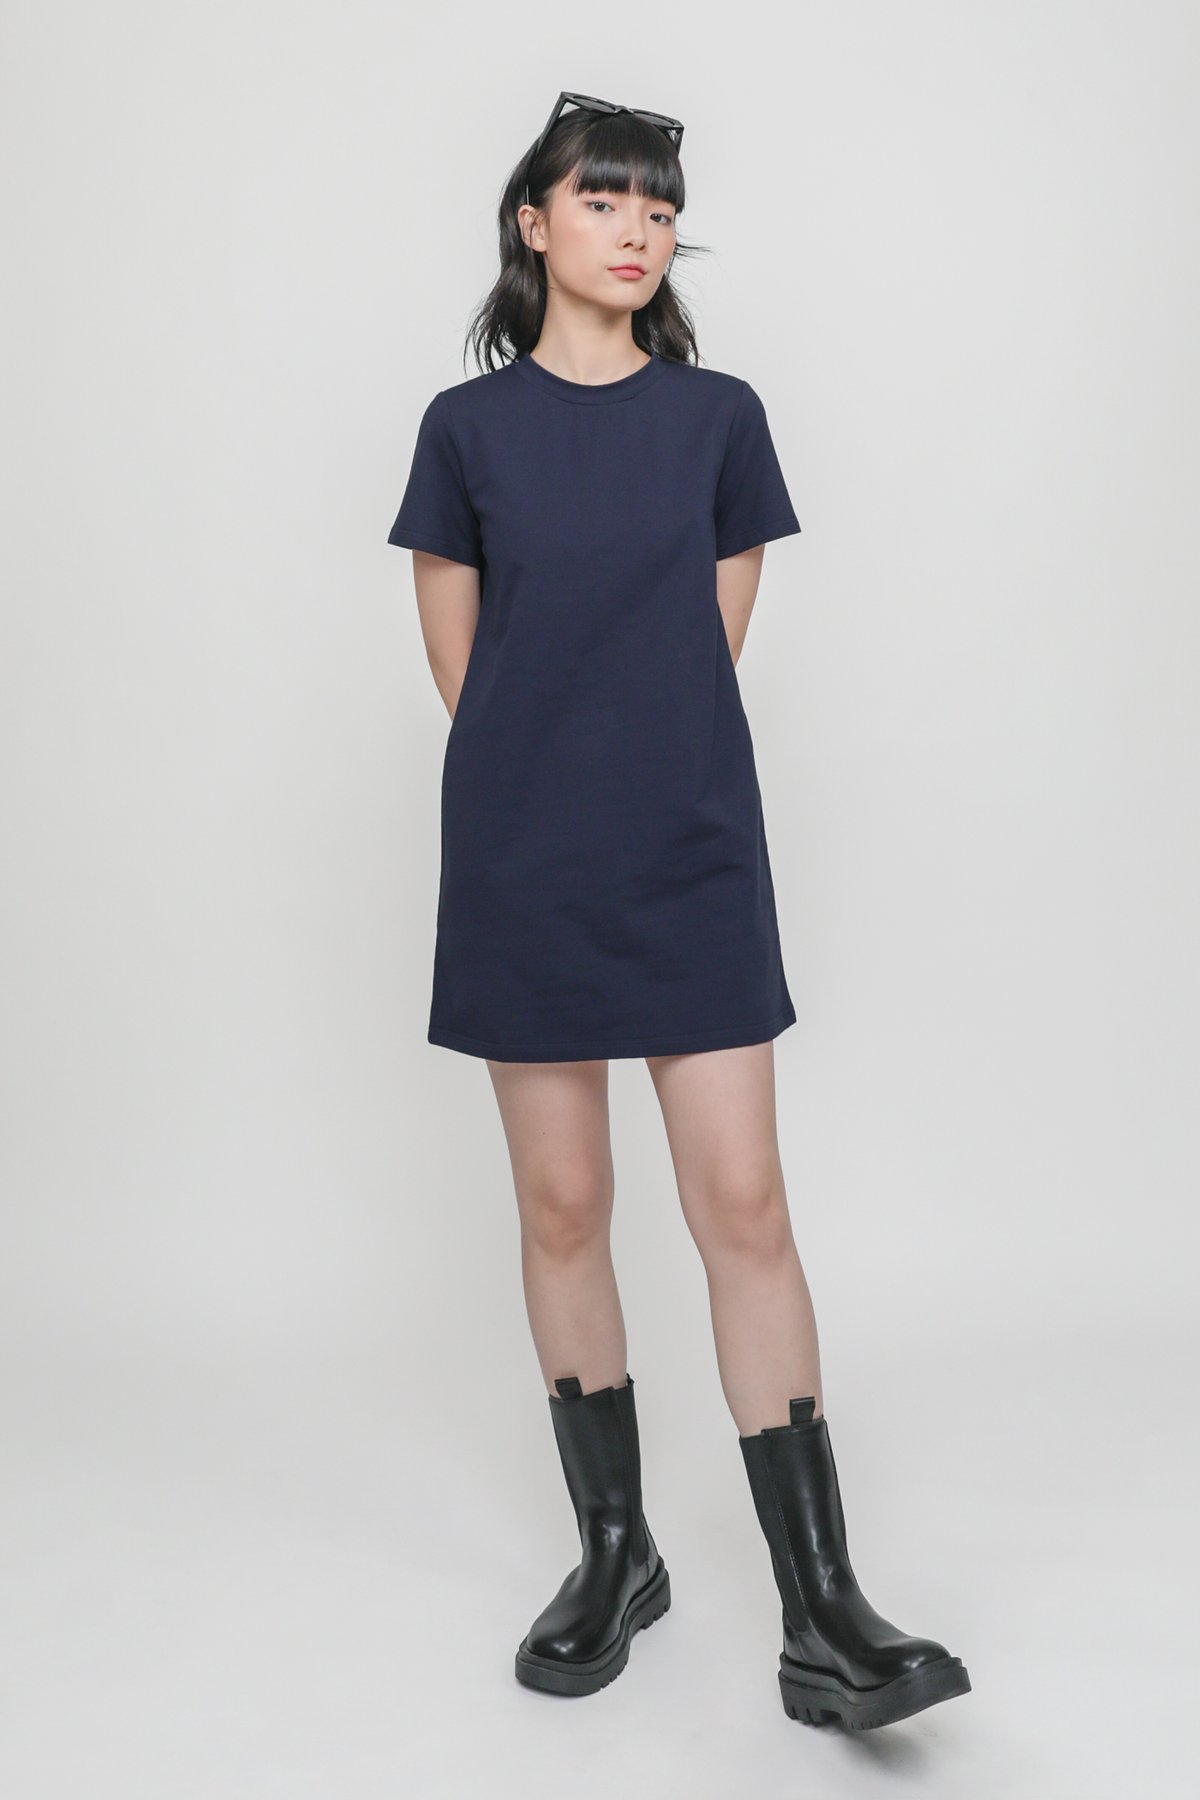 Ariane T-Shirt Dress (Navy)